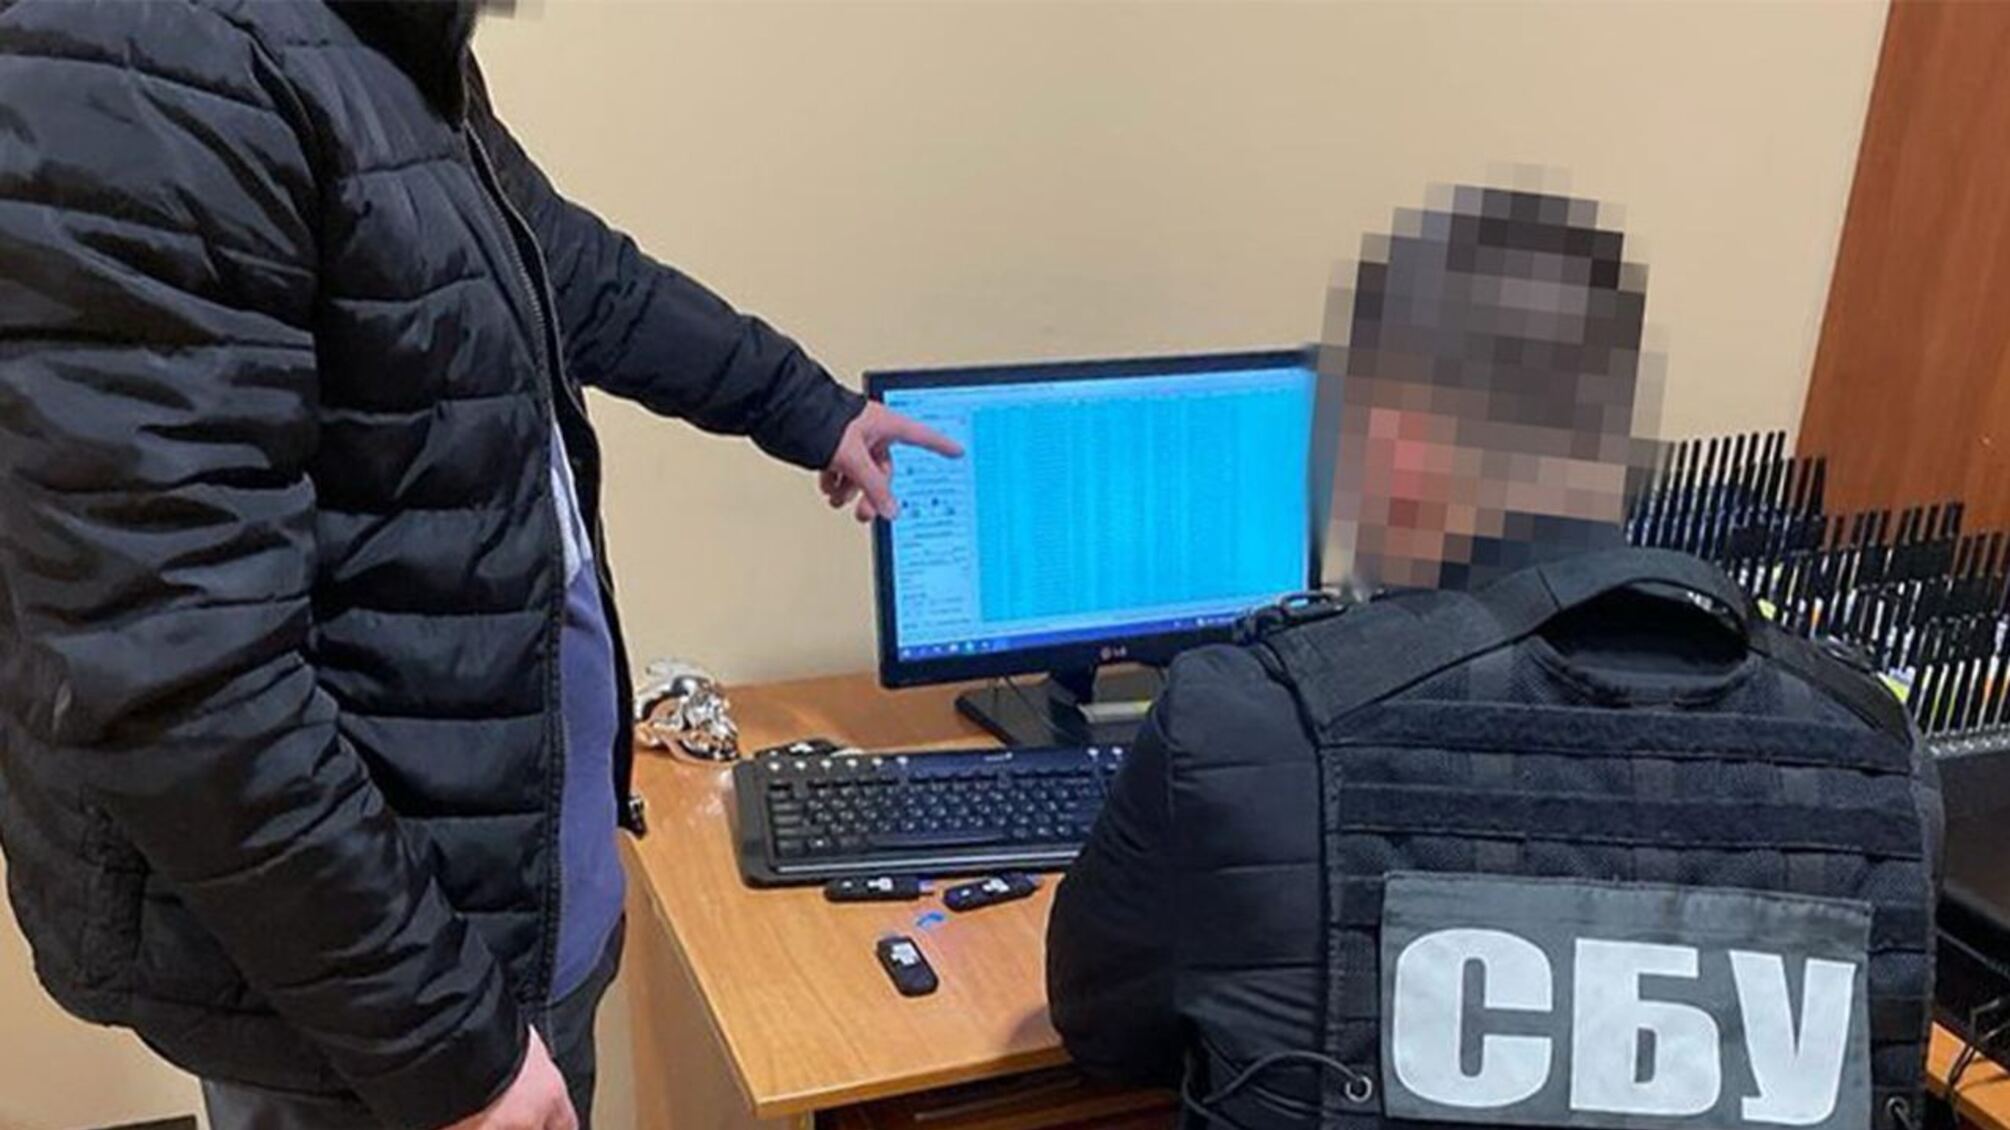 СБУ задержала жителя столицы, который посылал в российский телеграм-бот данные об обороне Киева